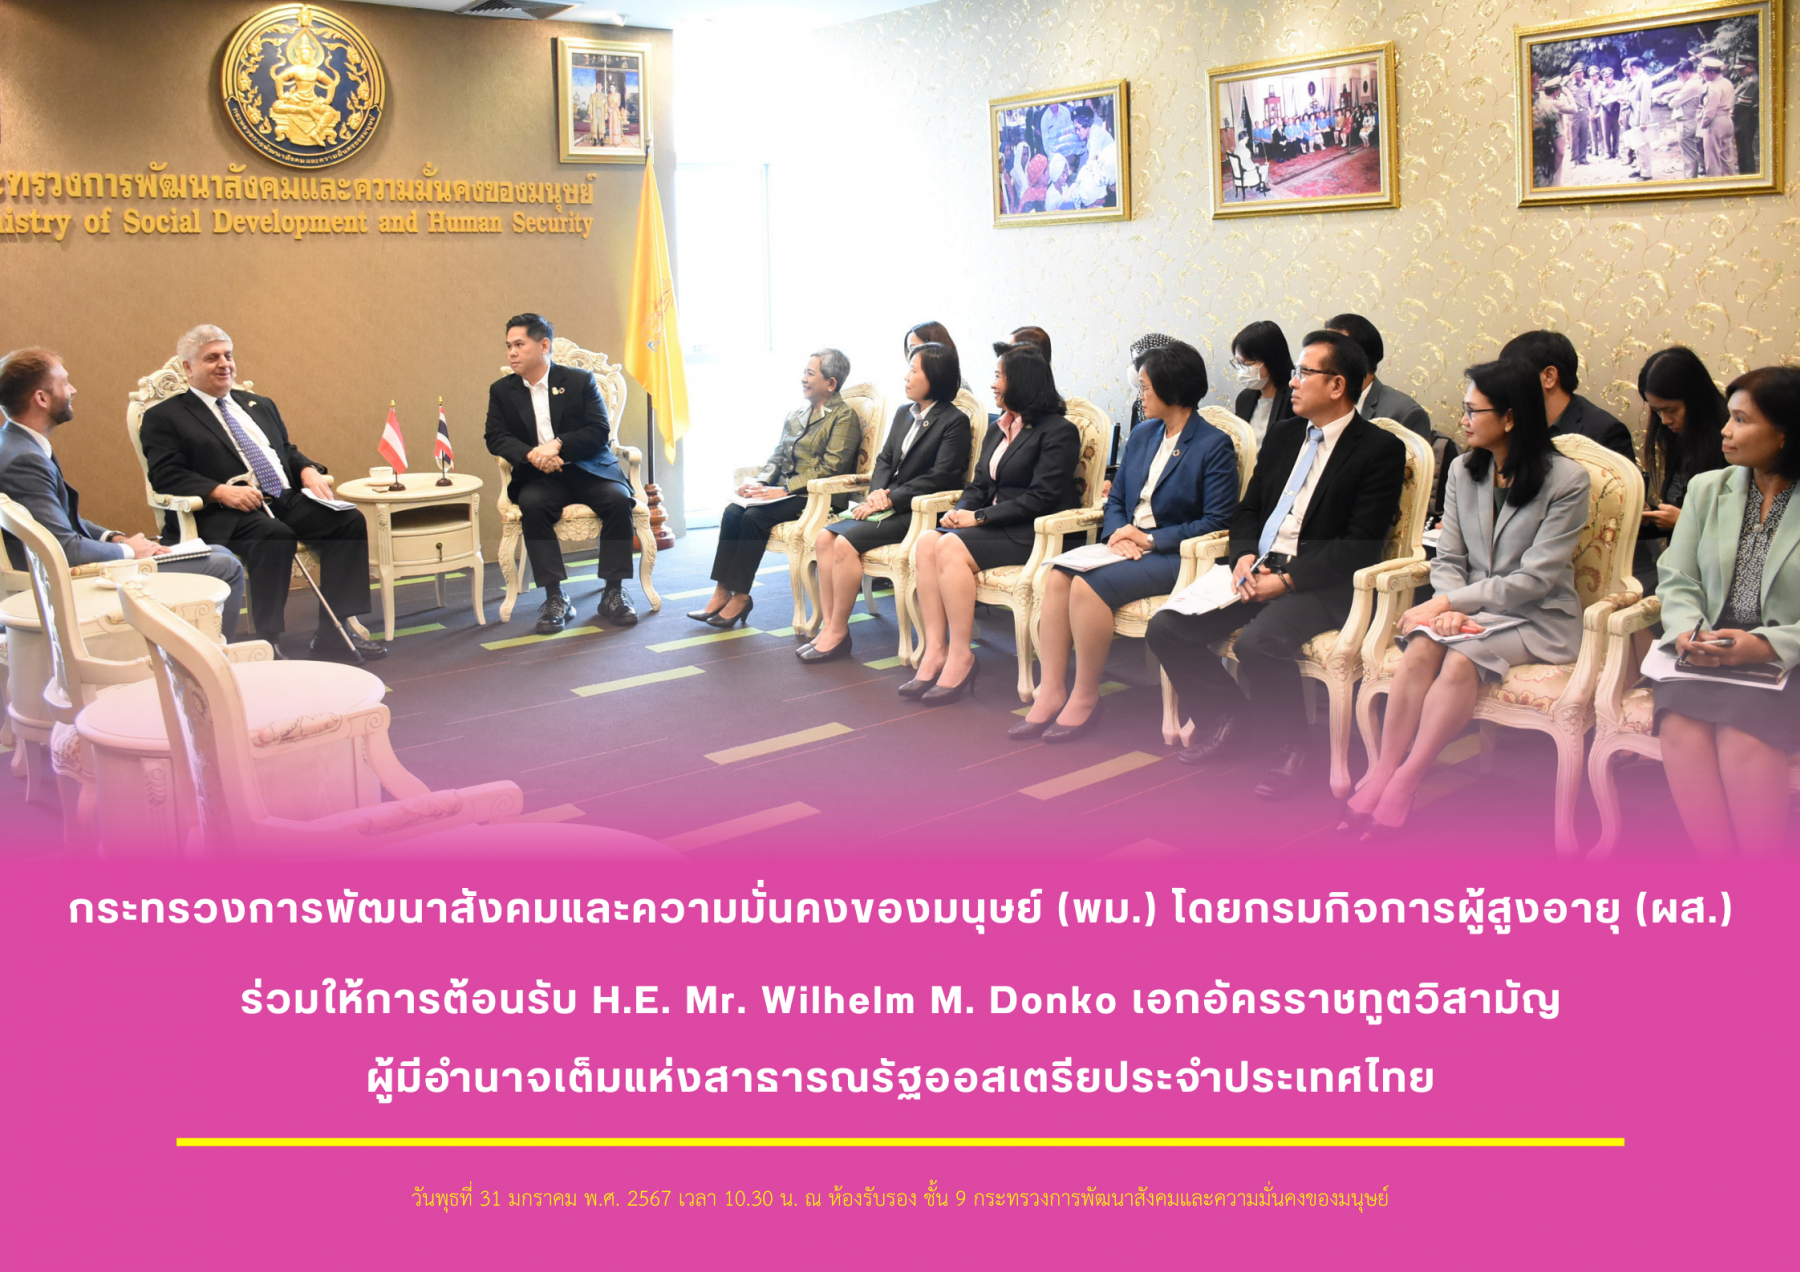 พม. โดยกรมกิจการผู้สูงอายุ (ผส.) ร่วมให้การต้อนรับ H.E. Mr. Wilhelm M. Donko เอกอัครราชทูตวิสามัญผู้มีอำนาจเต็มแห่งสาธารณรัฐออสเตรียประจำประเทศไทย